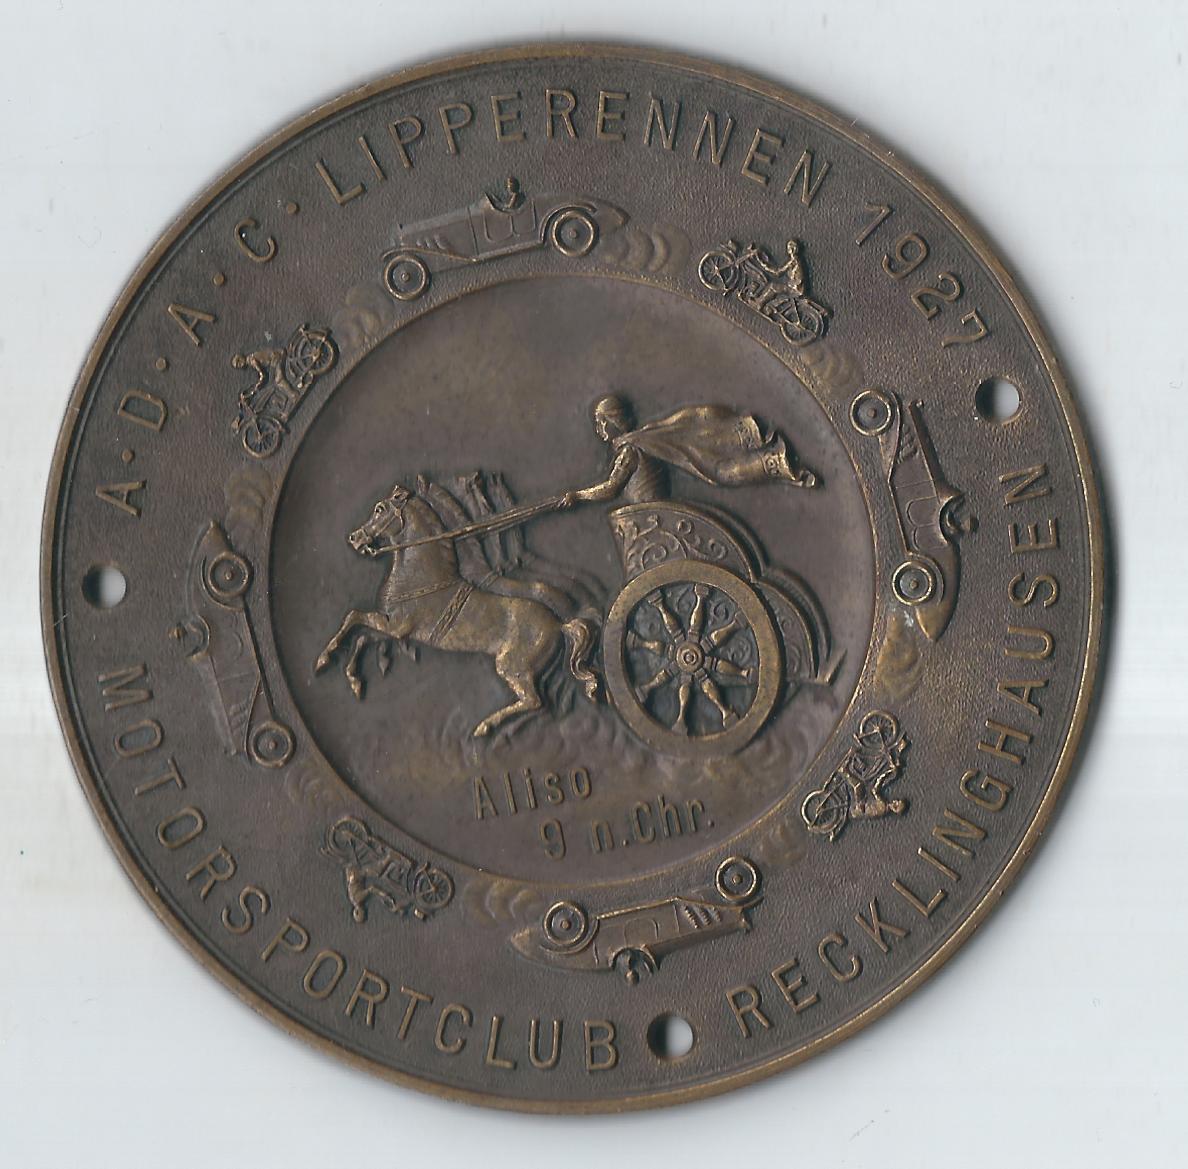  Medaillen Lippe Rennen 1927  178,1 Gr. Bronze R selten Goldankauf Koblenz Frank Maurer F956   